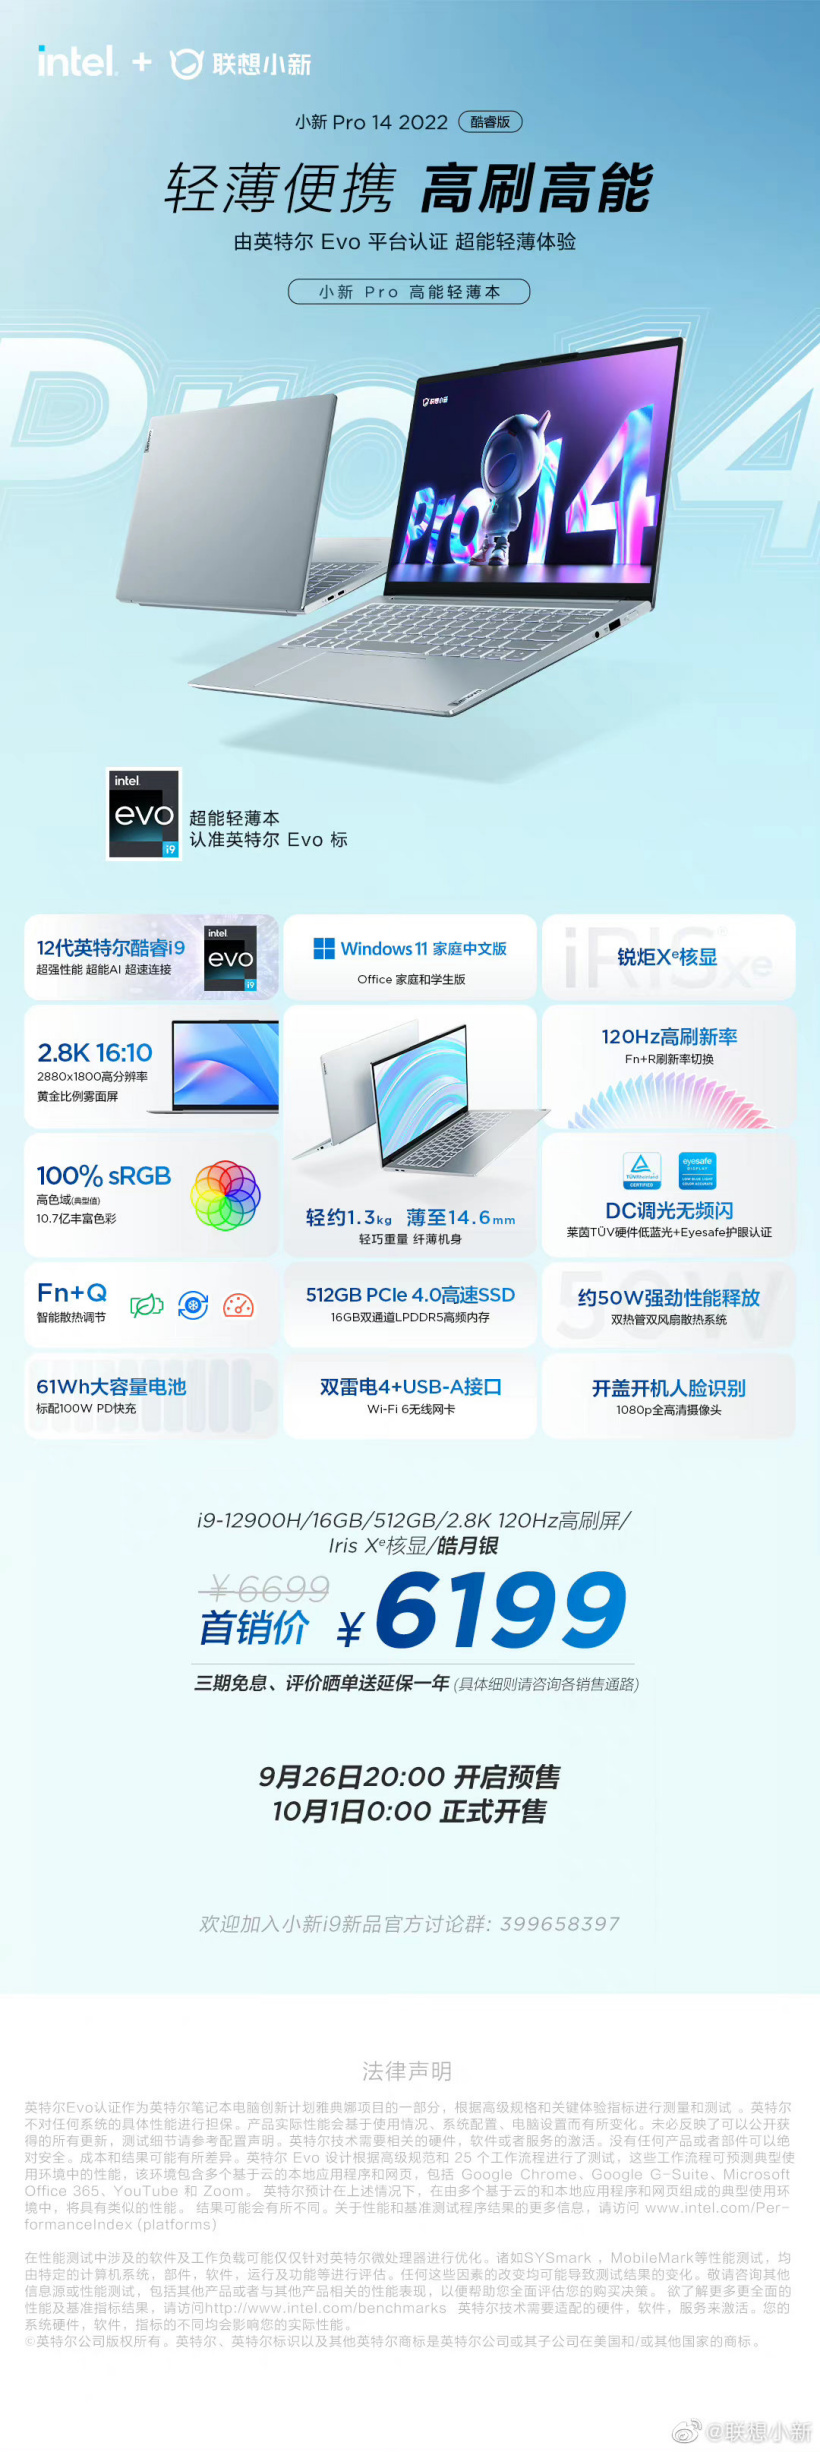 联想小新 Pro14 / Pro16 酷睿 i9-12900 版开启预售：6199 元 / 6299 元